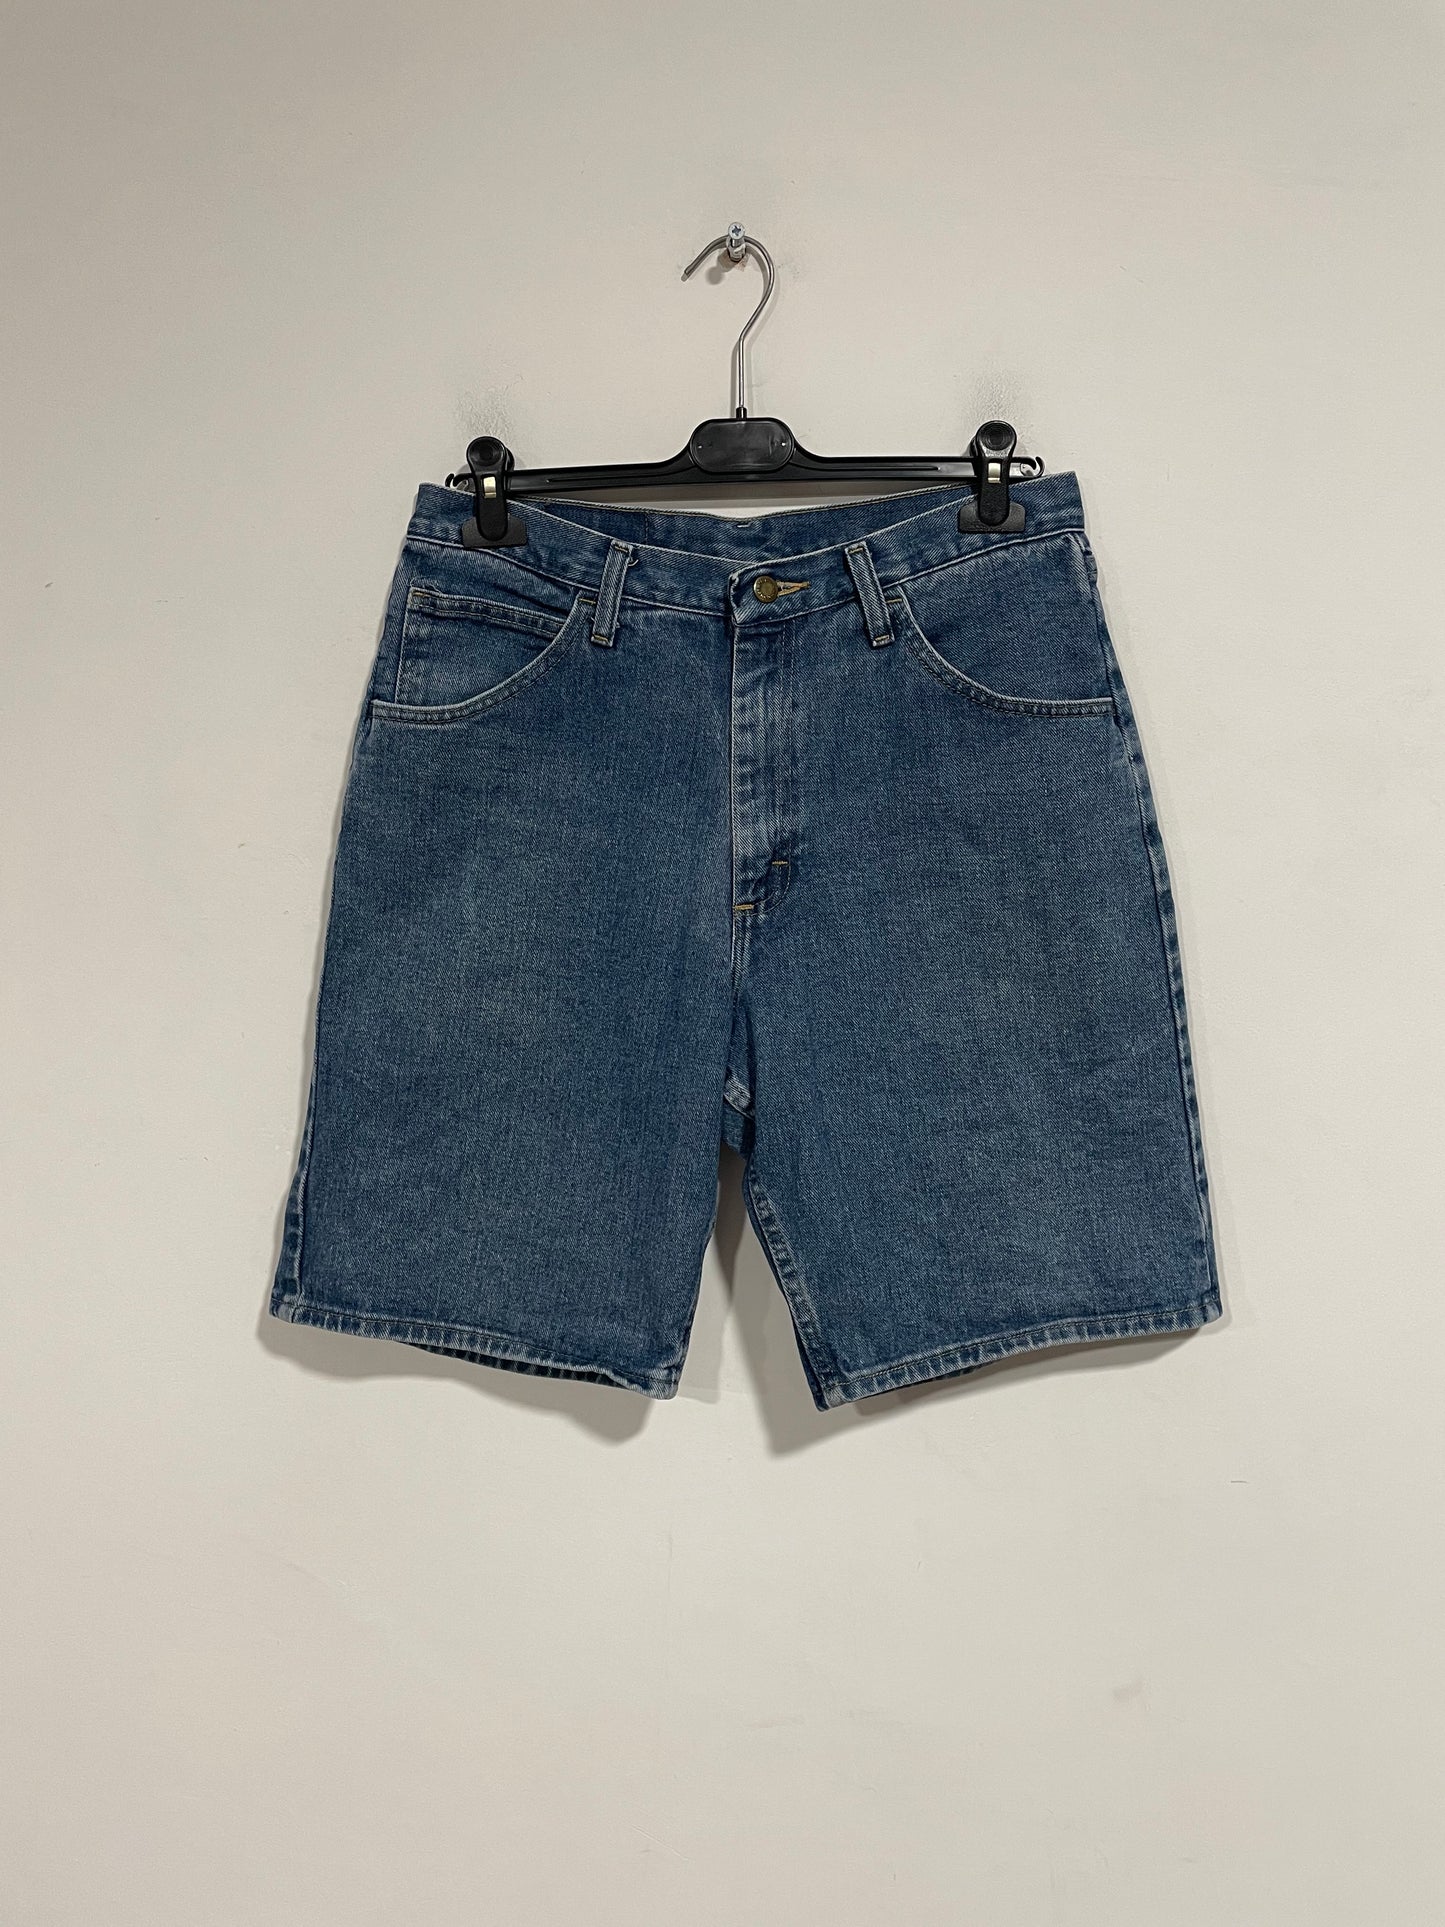 Short in jeans Wrangler (D805)